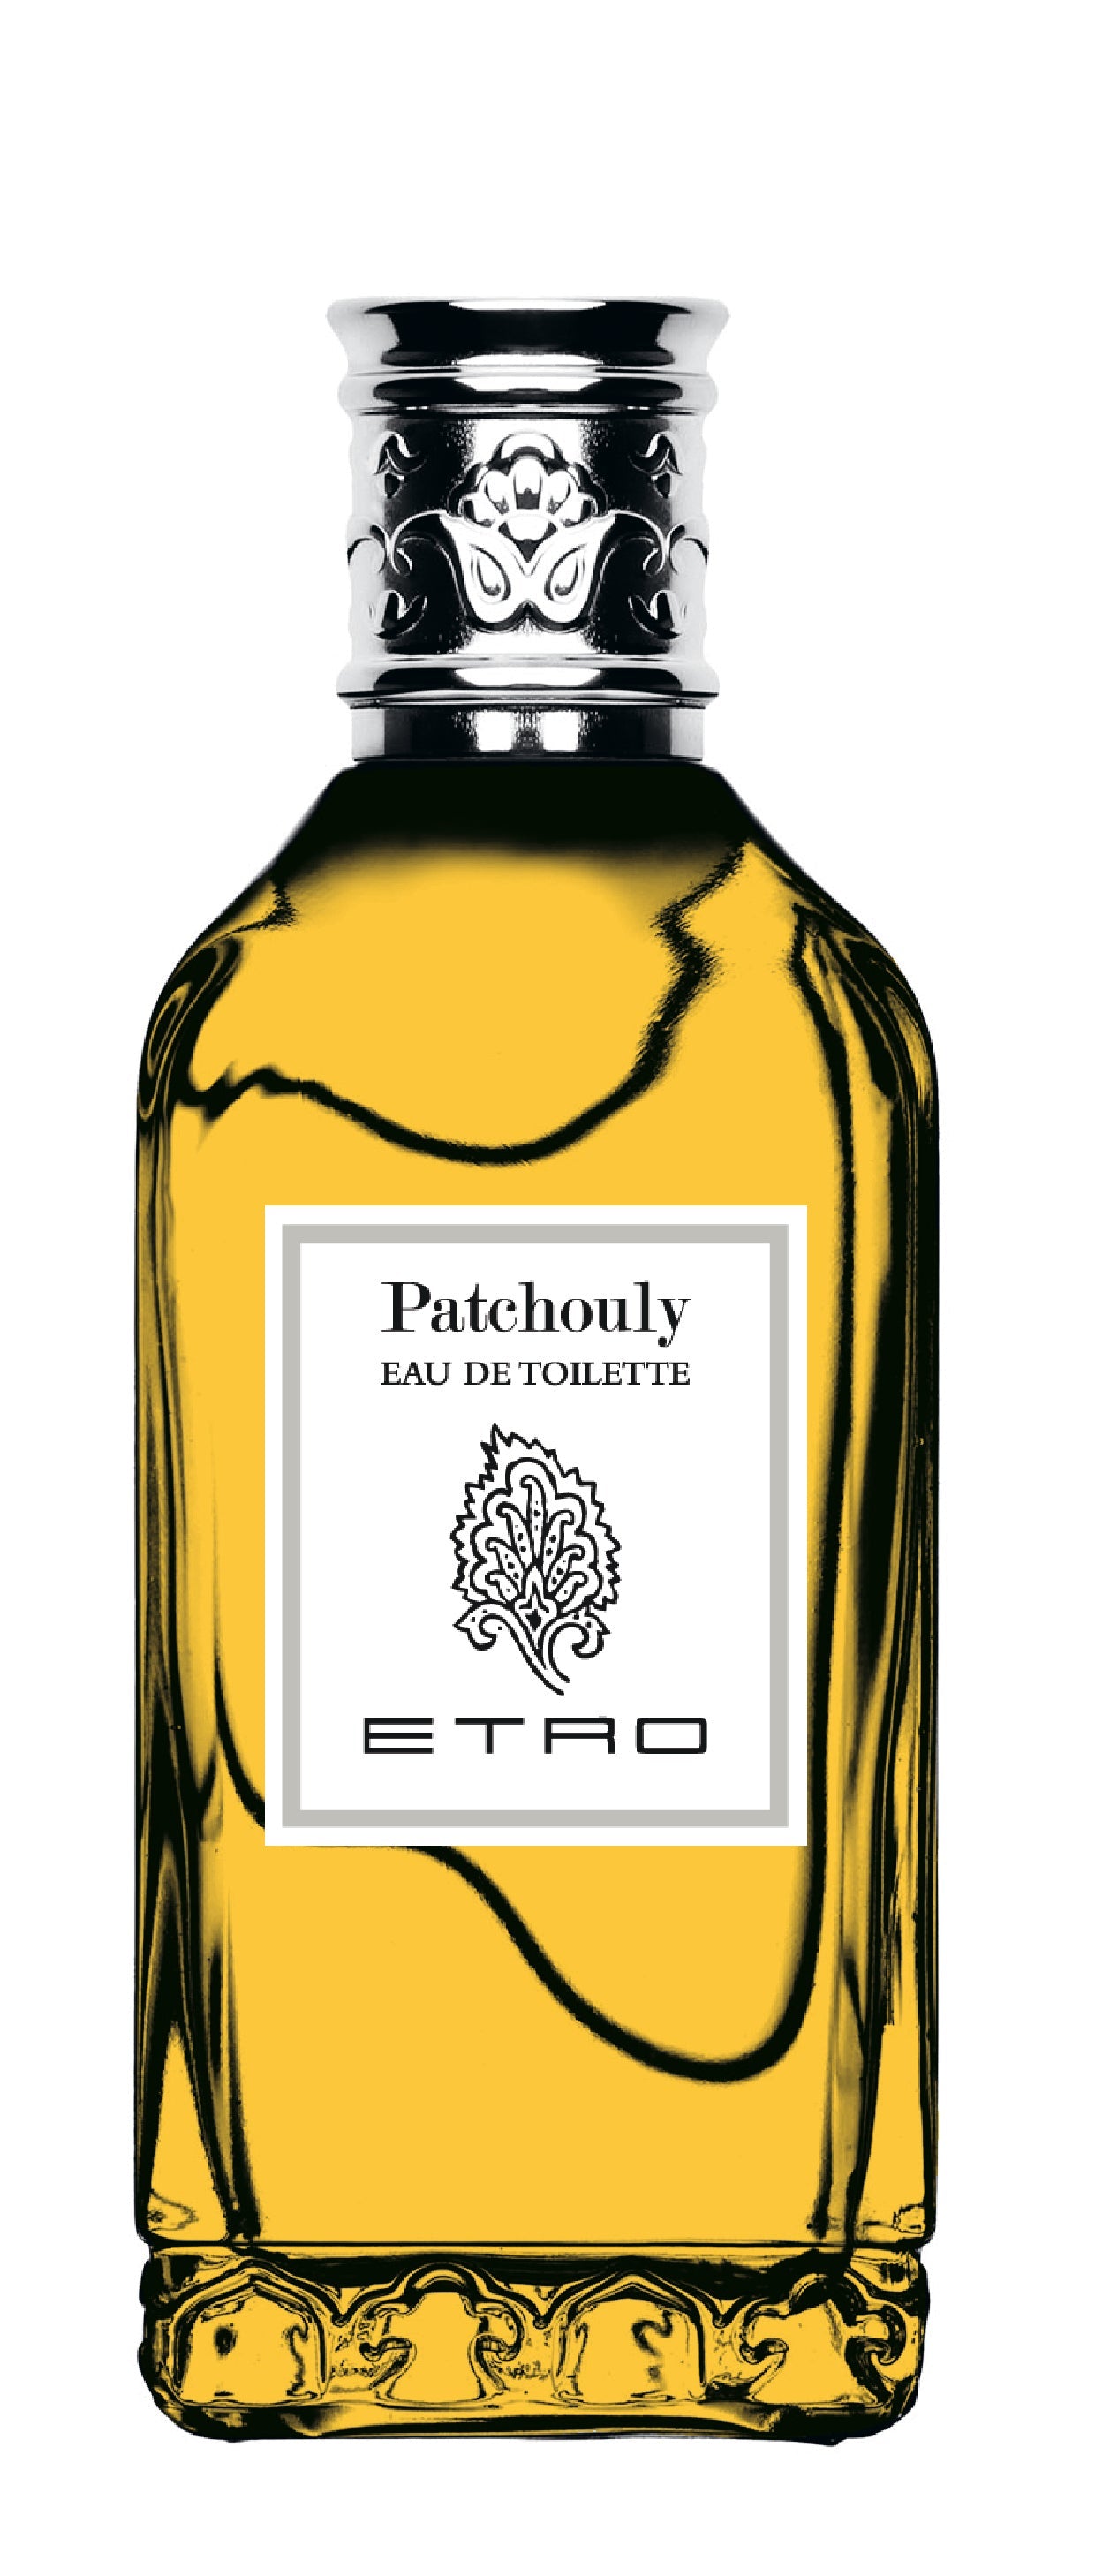 ETRO - PATCHOULY EAU DE TOILETTE - Carillon Profumeria